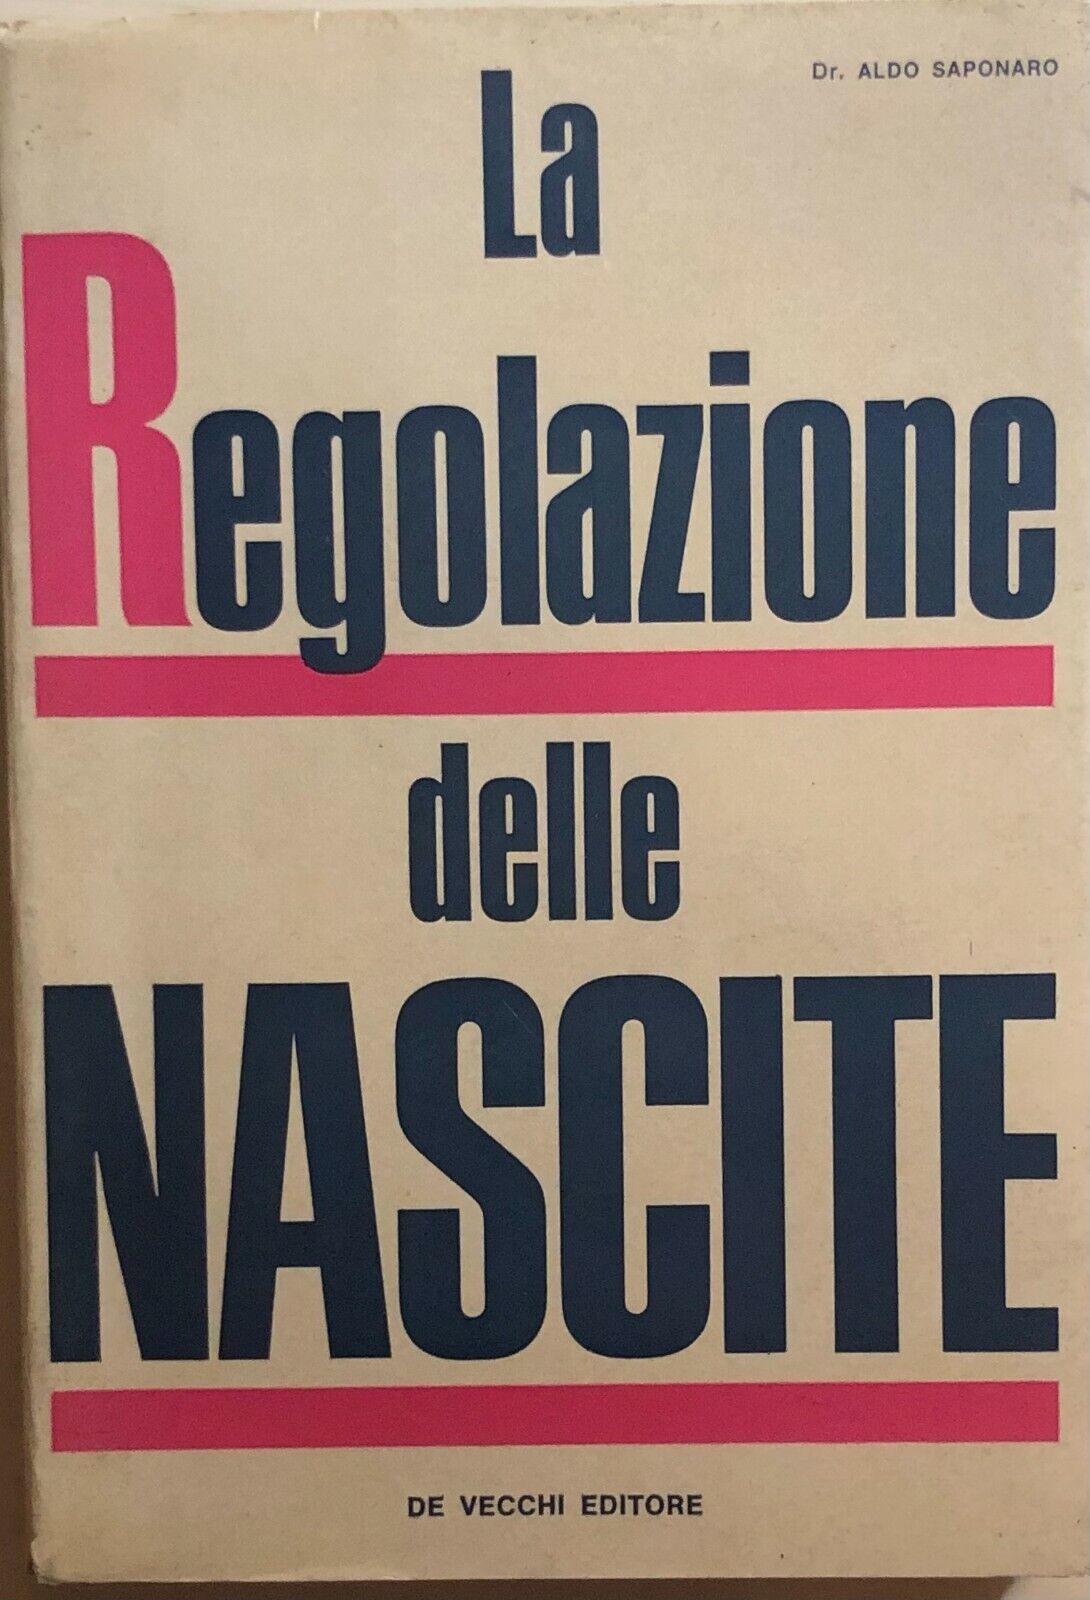 La regolazione delle nascite di Dr. Aldo Saponaro, 1967, De Vecchi Editore